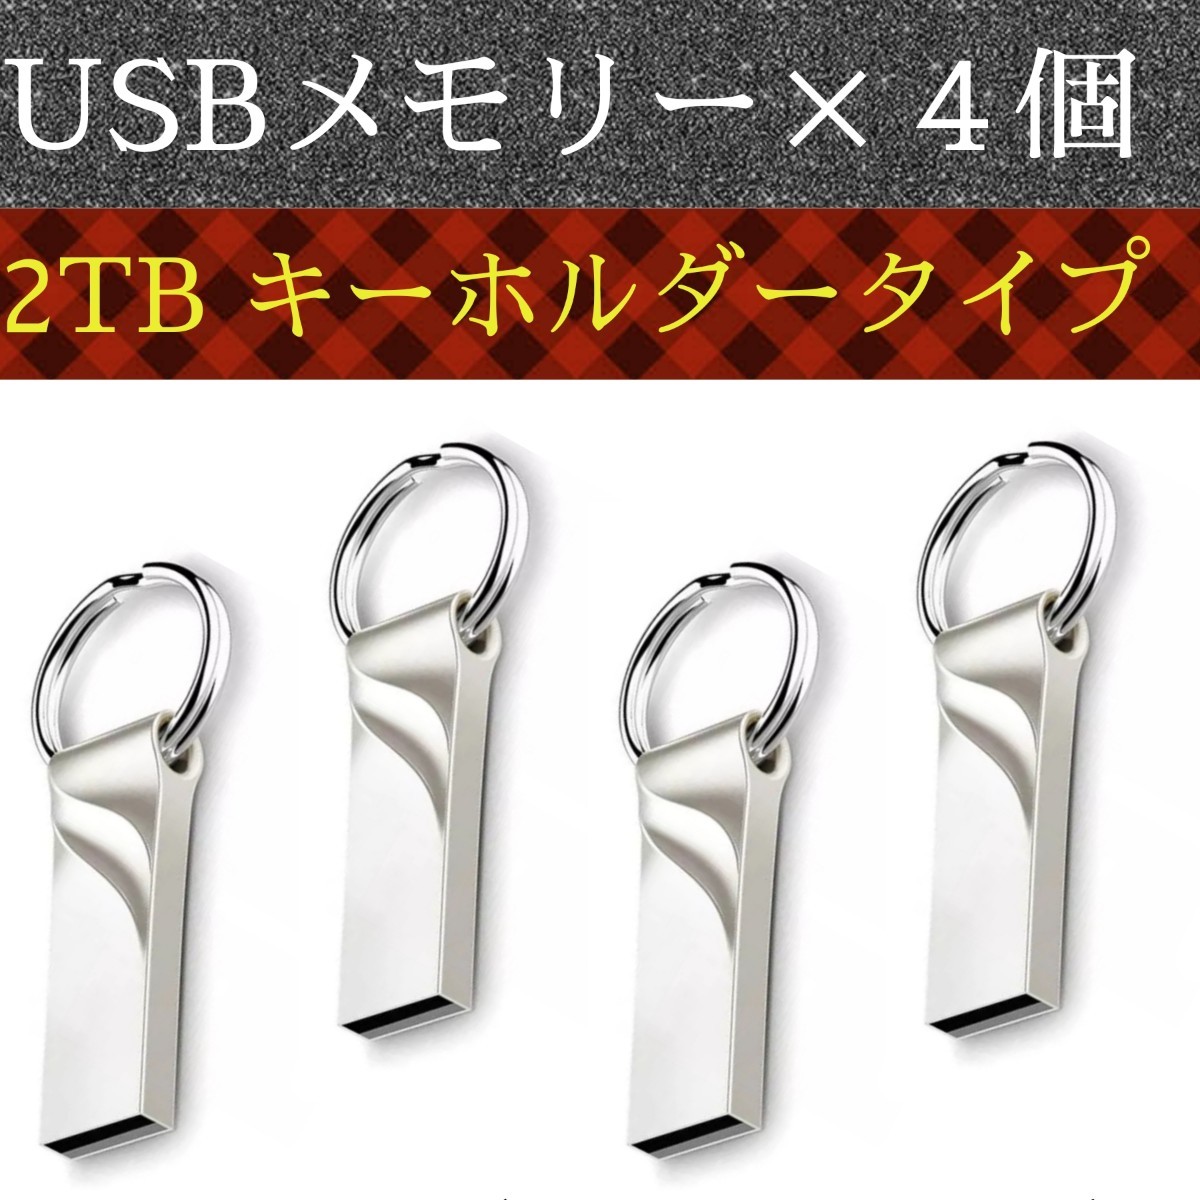 USBメモリー2TB4個 送料無料 